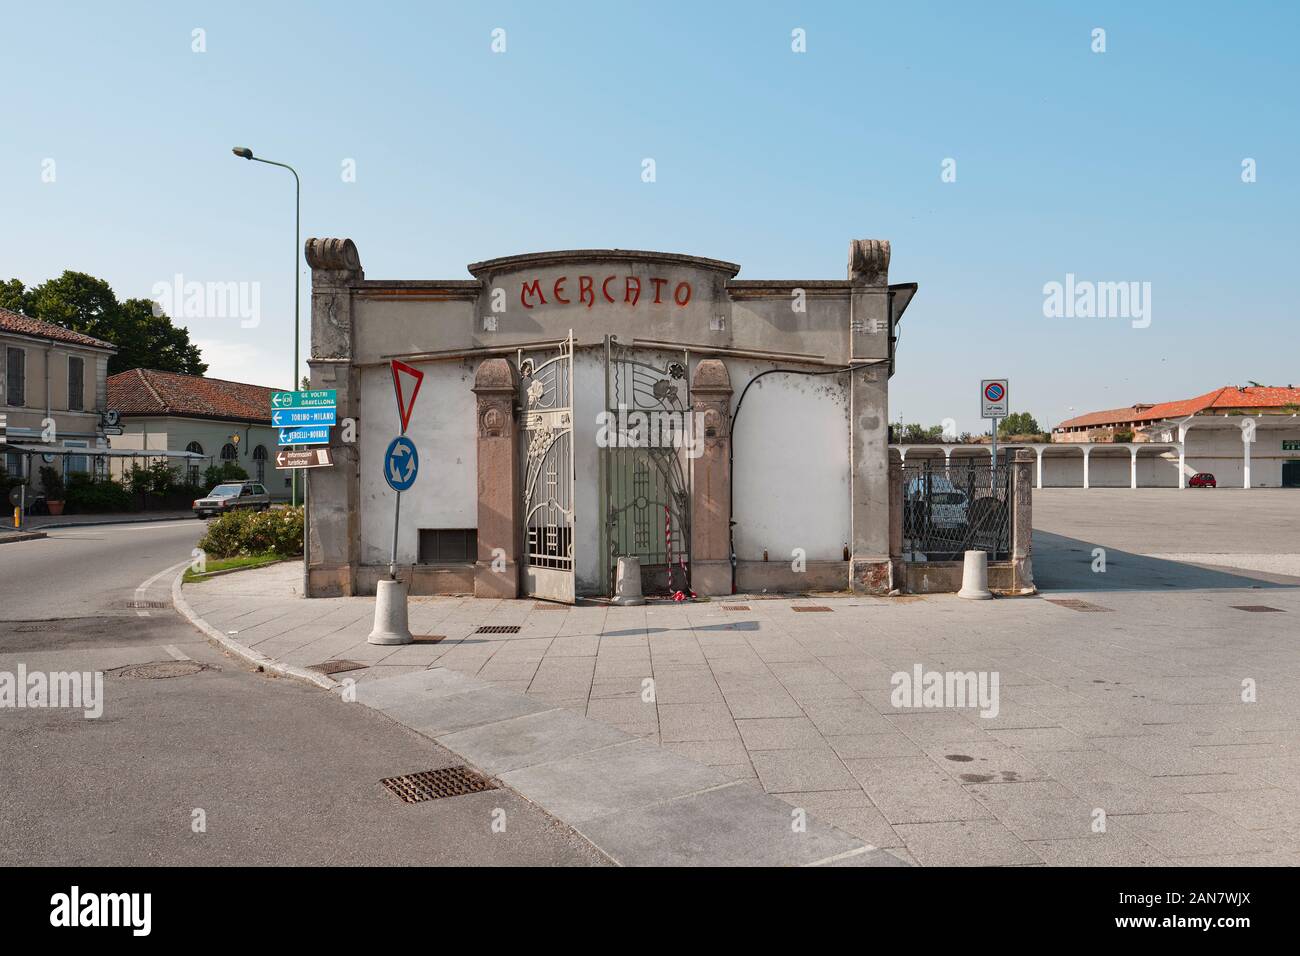 Mercato Pavia in Casale Monferrato - The exterior architecture and sign for a market / mercato square in Casale Monferrato, Italy EU Stock Photo